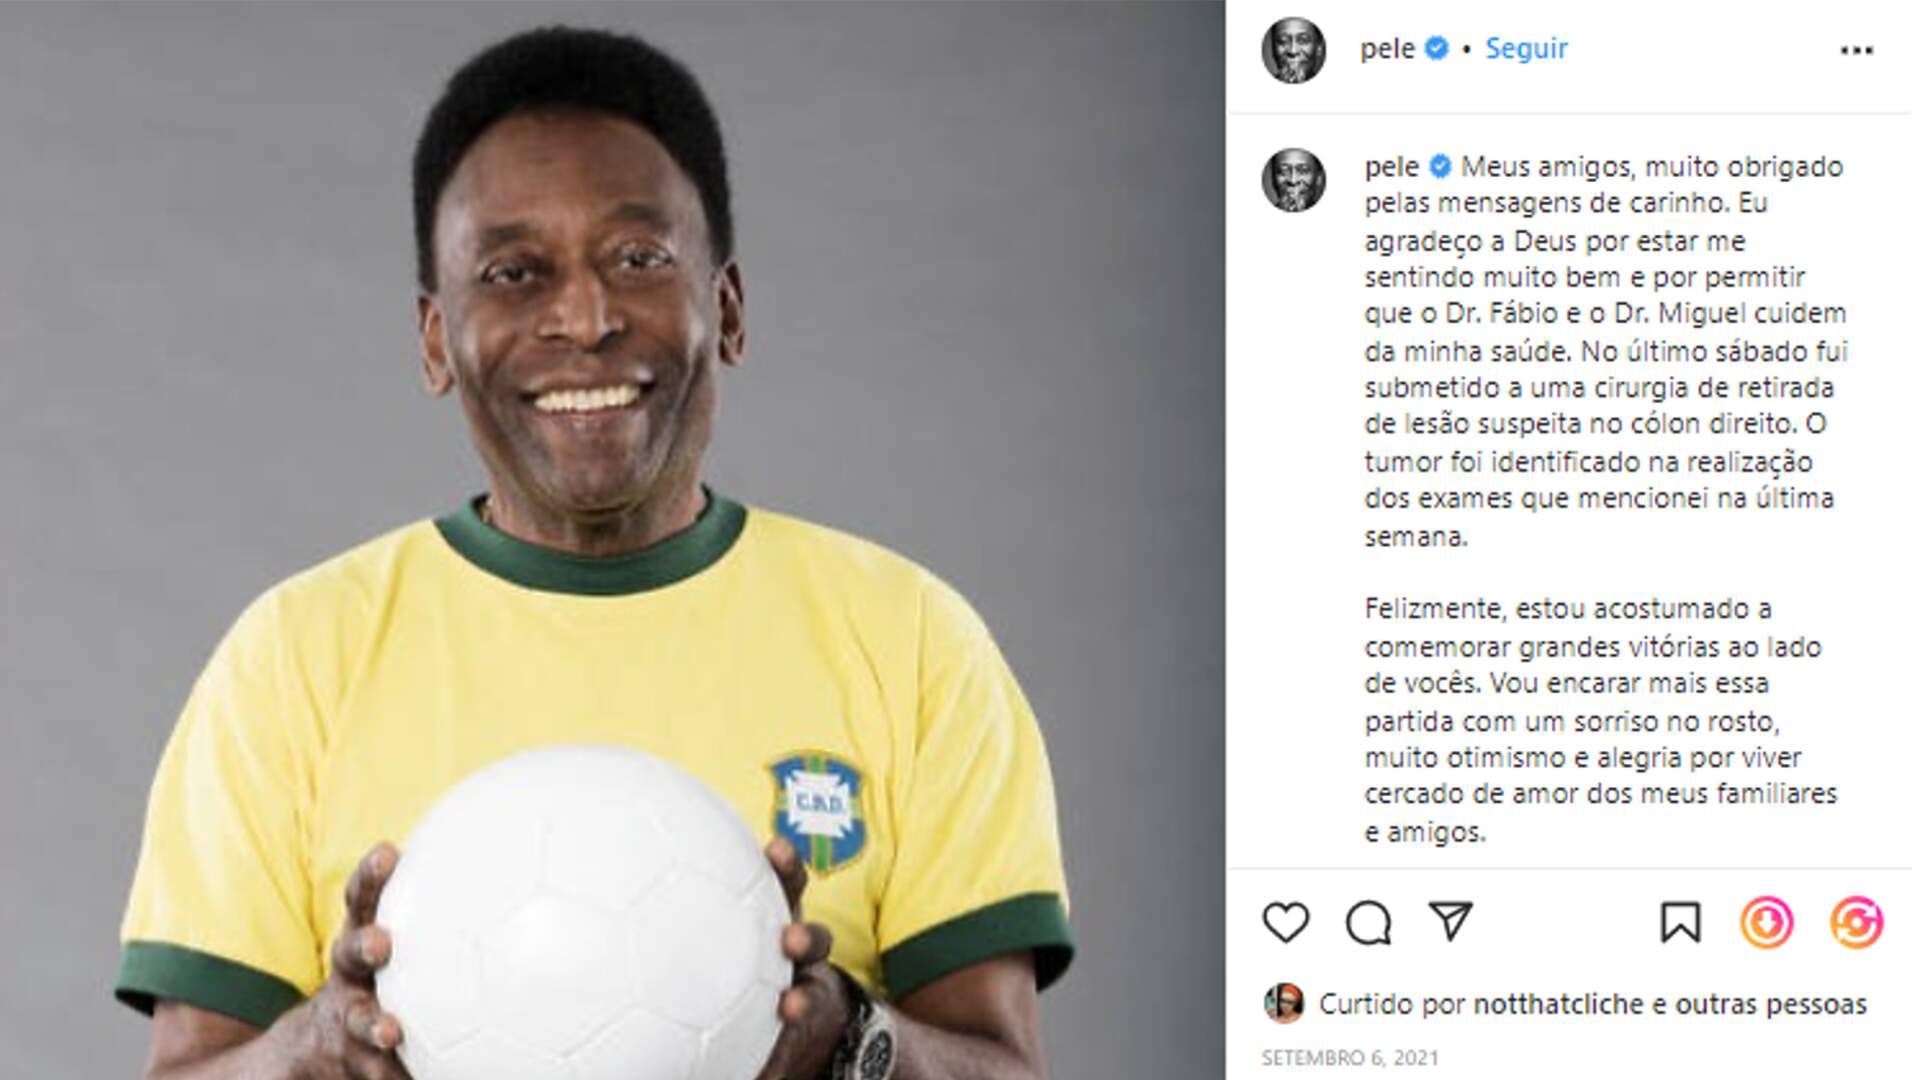 Após a cirurgia de retirada do tumor, Pelé agradeceu a sua equipe médica